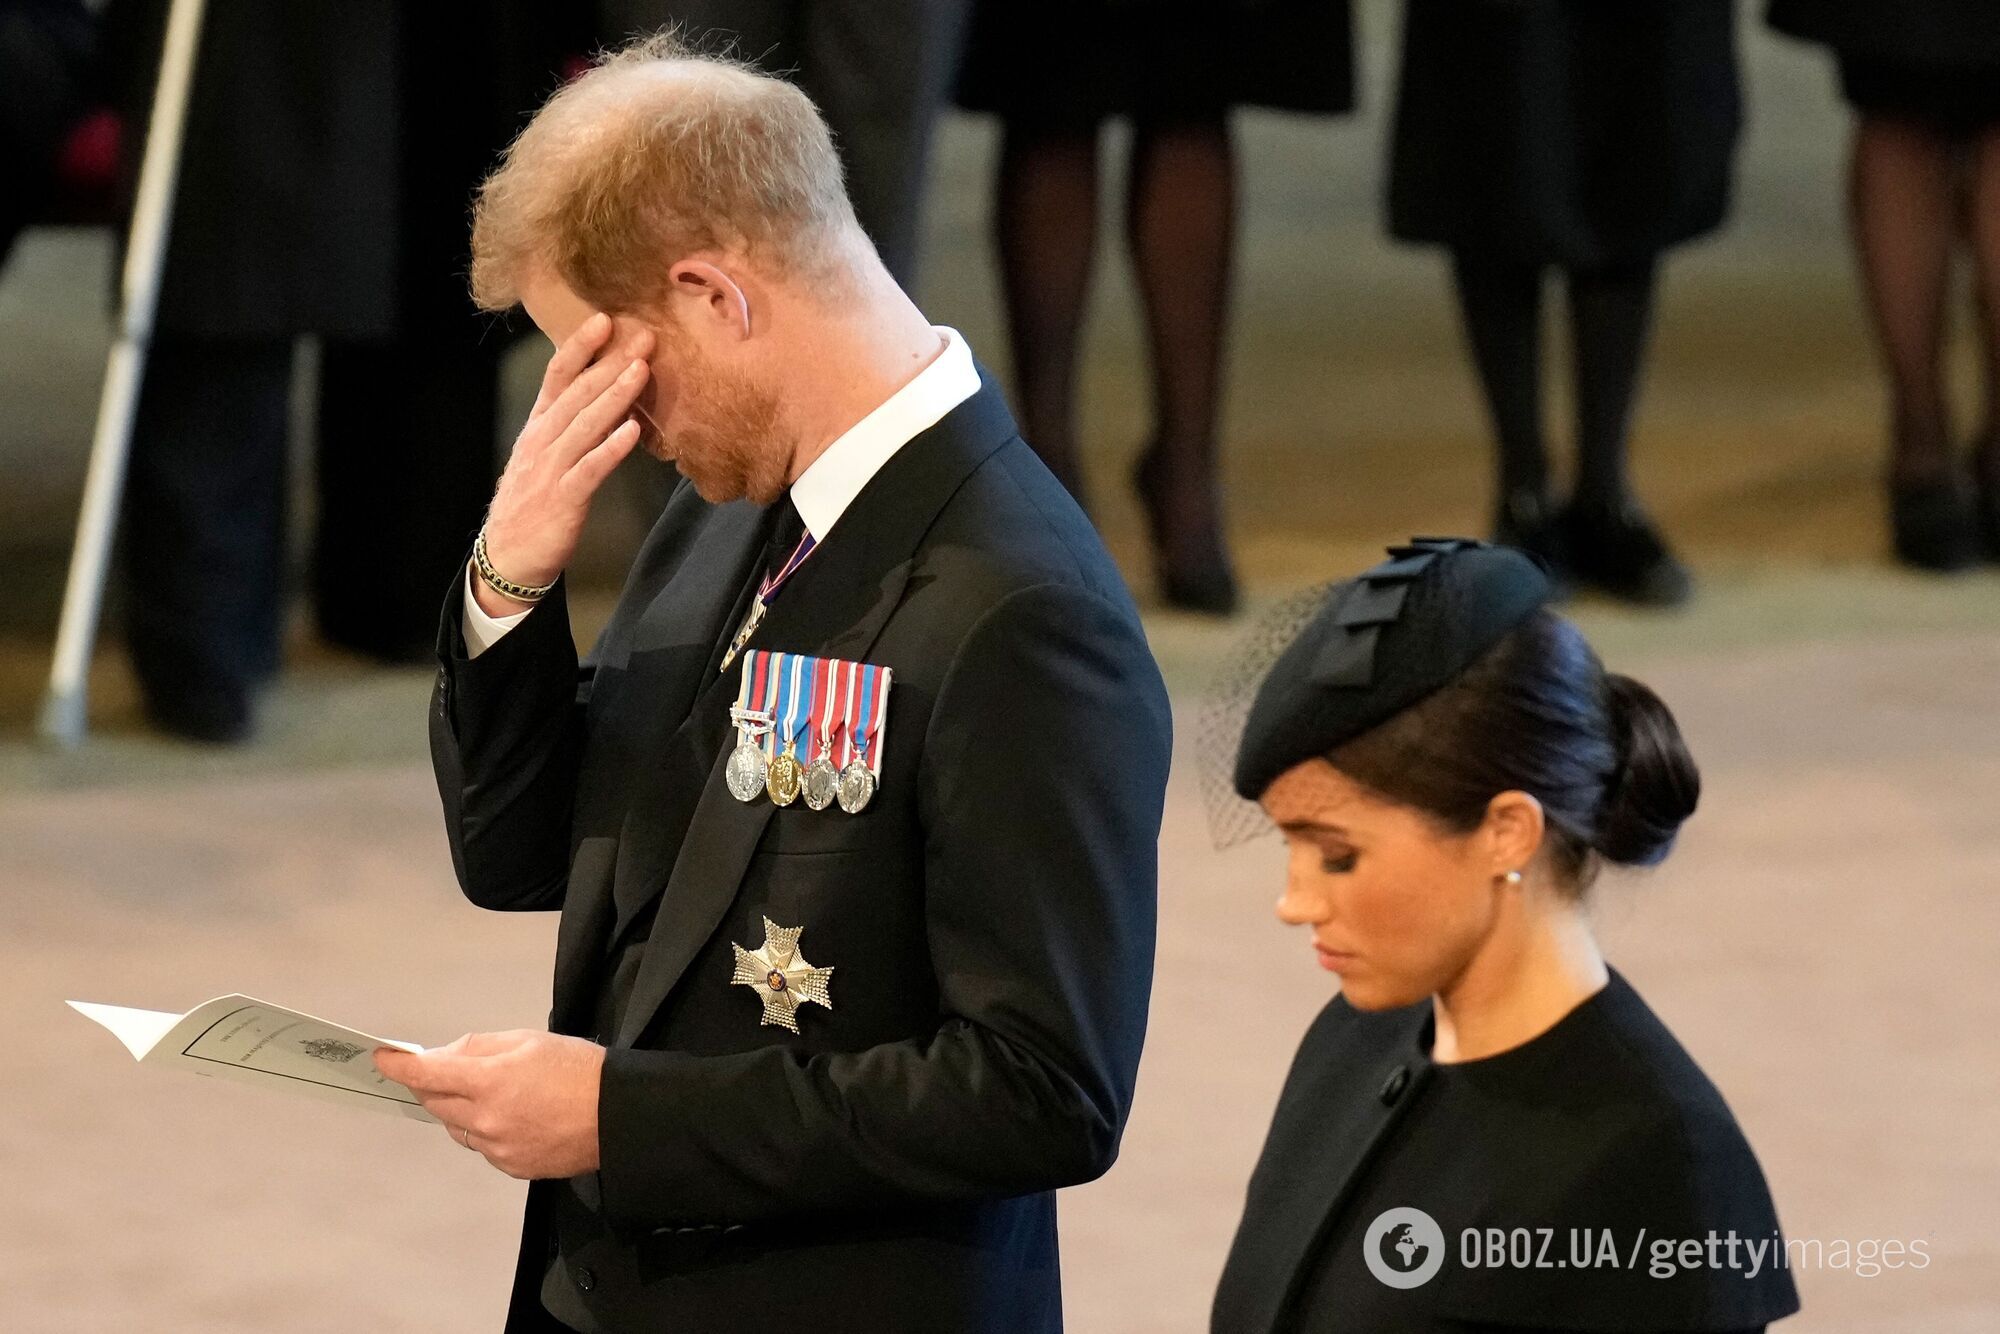 Чоловіки теж плачуть. Чарльз ІІІ та принц Гаррі не стримали емоцій під час траурної процесії з труною королеви